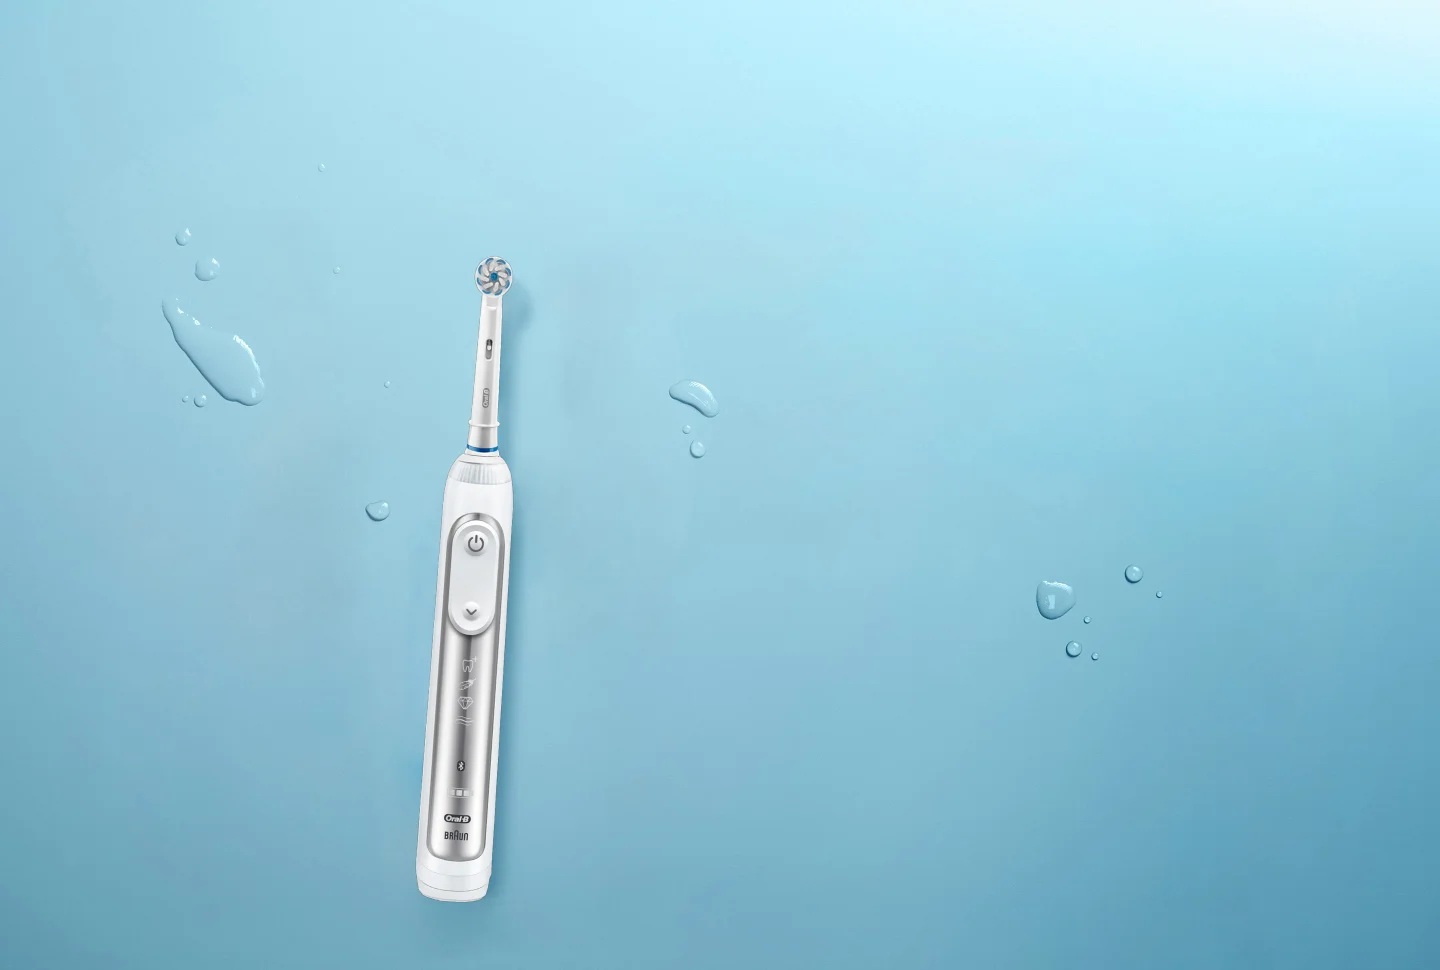 Cabezales de cepillo de repuesto del cepillo eléctrico Oral-B iO